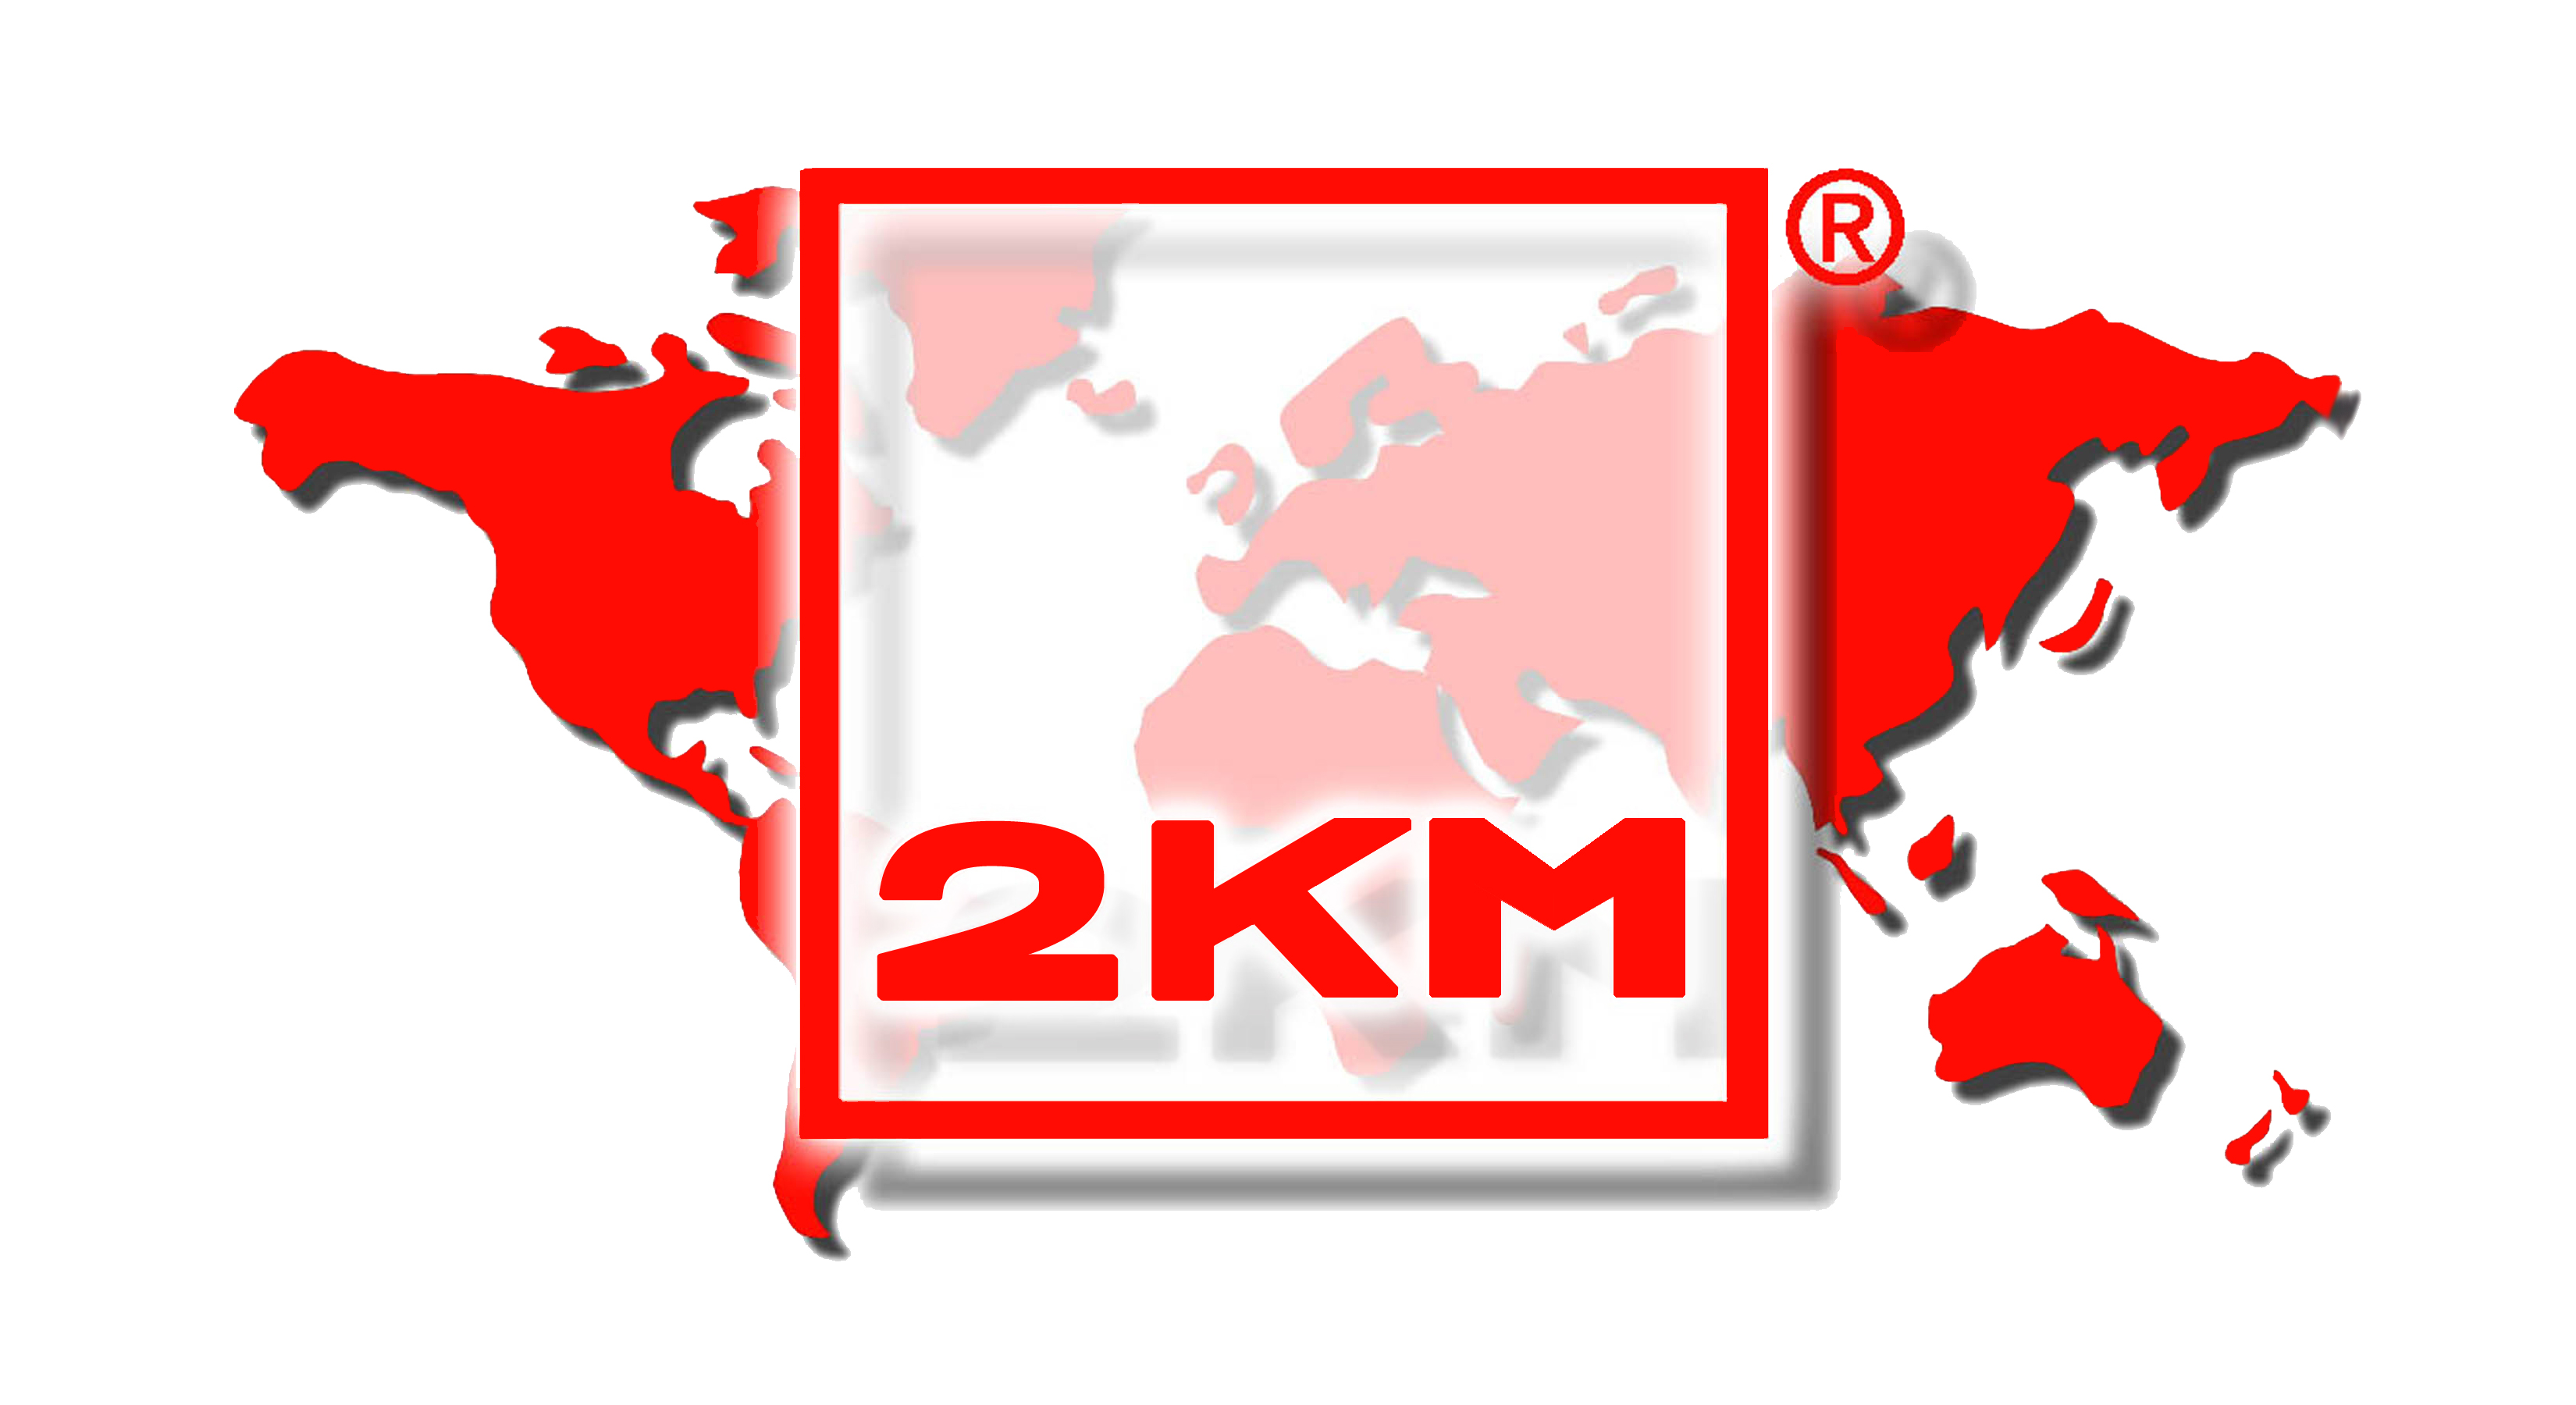 2KM UK Ltd